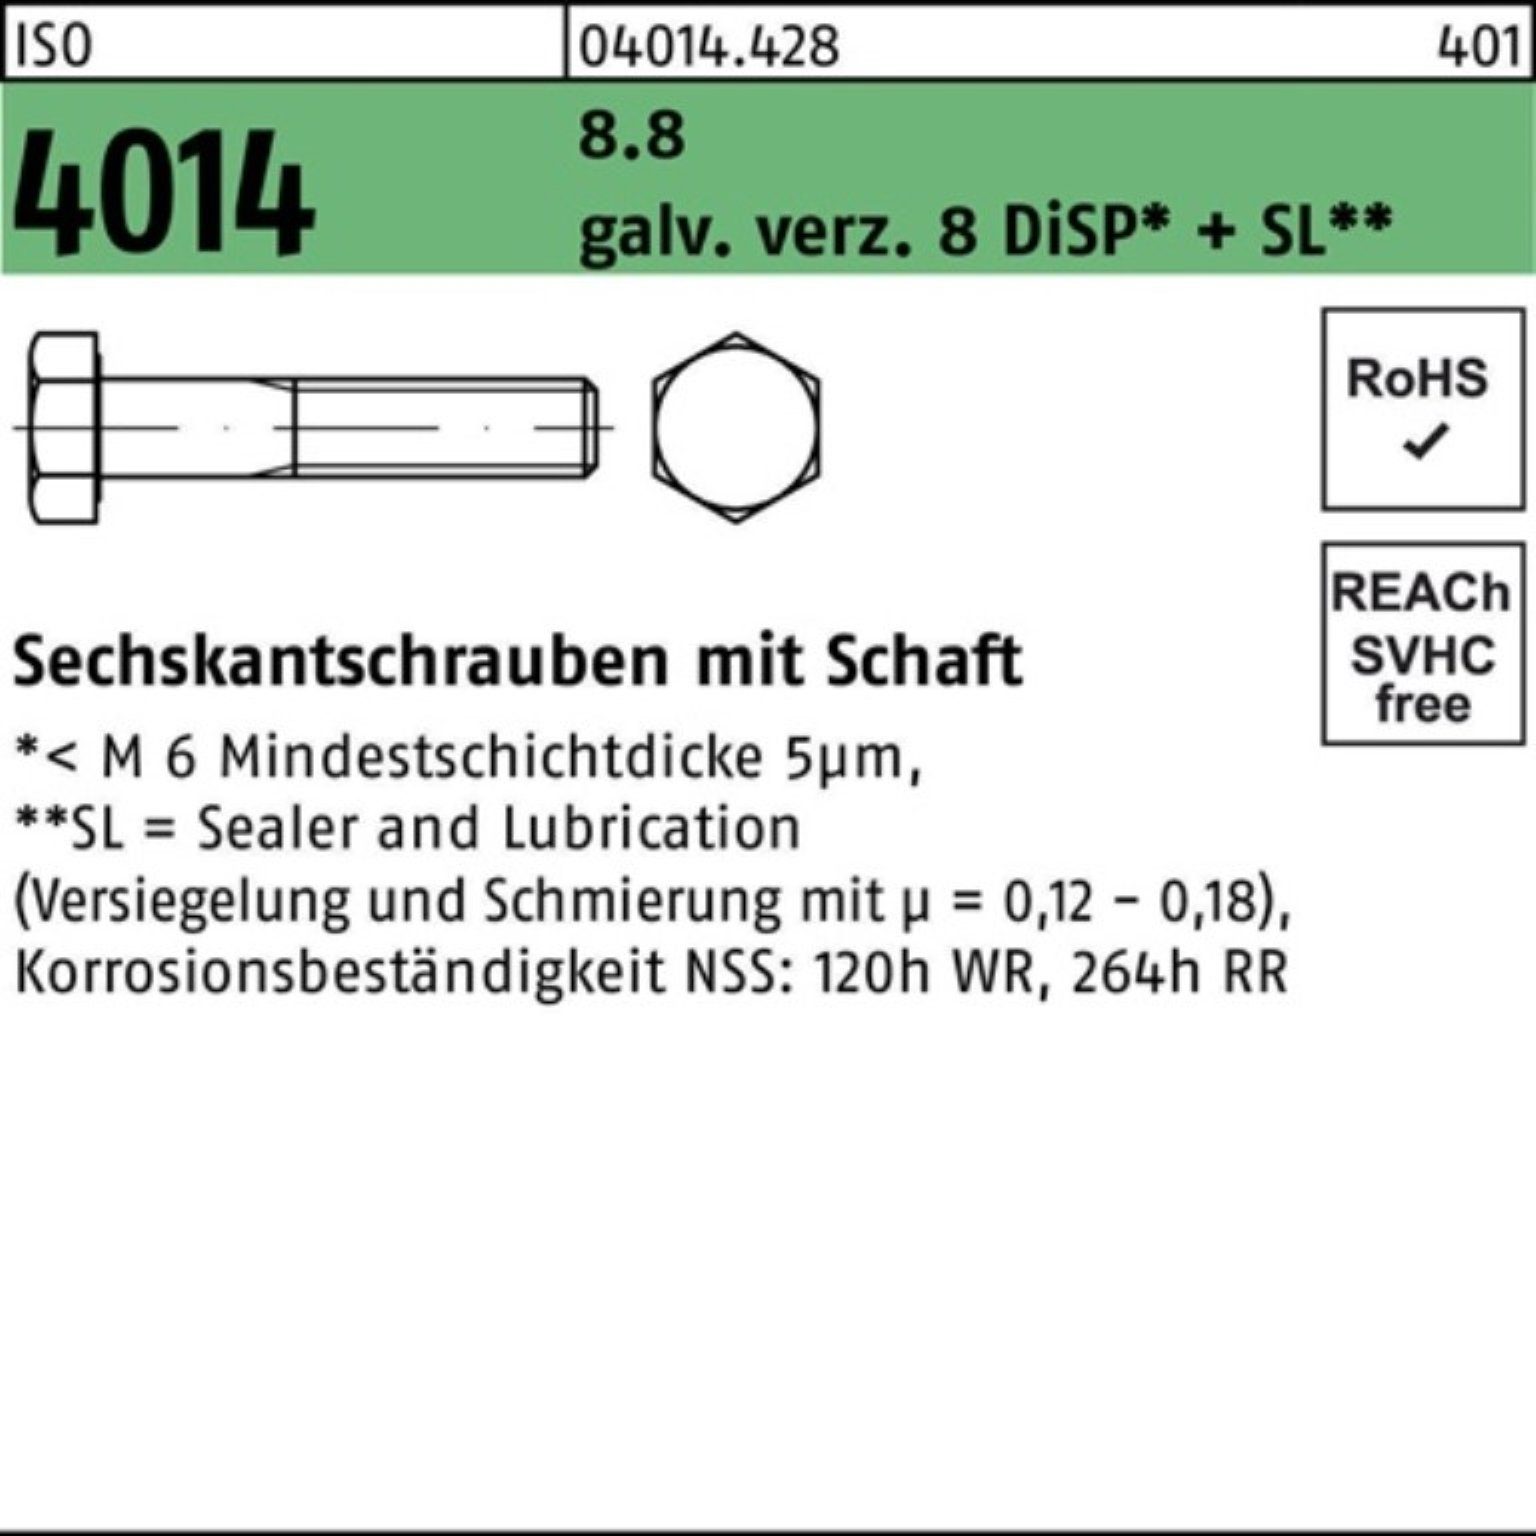 Bufab Sechskantschraube 100er Pack Sechskantschraube ISO galv.verz. M14x140 4014 8.8 Schaft 8